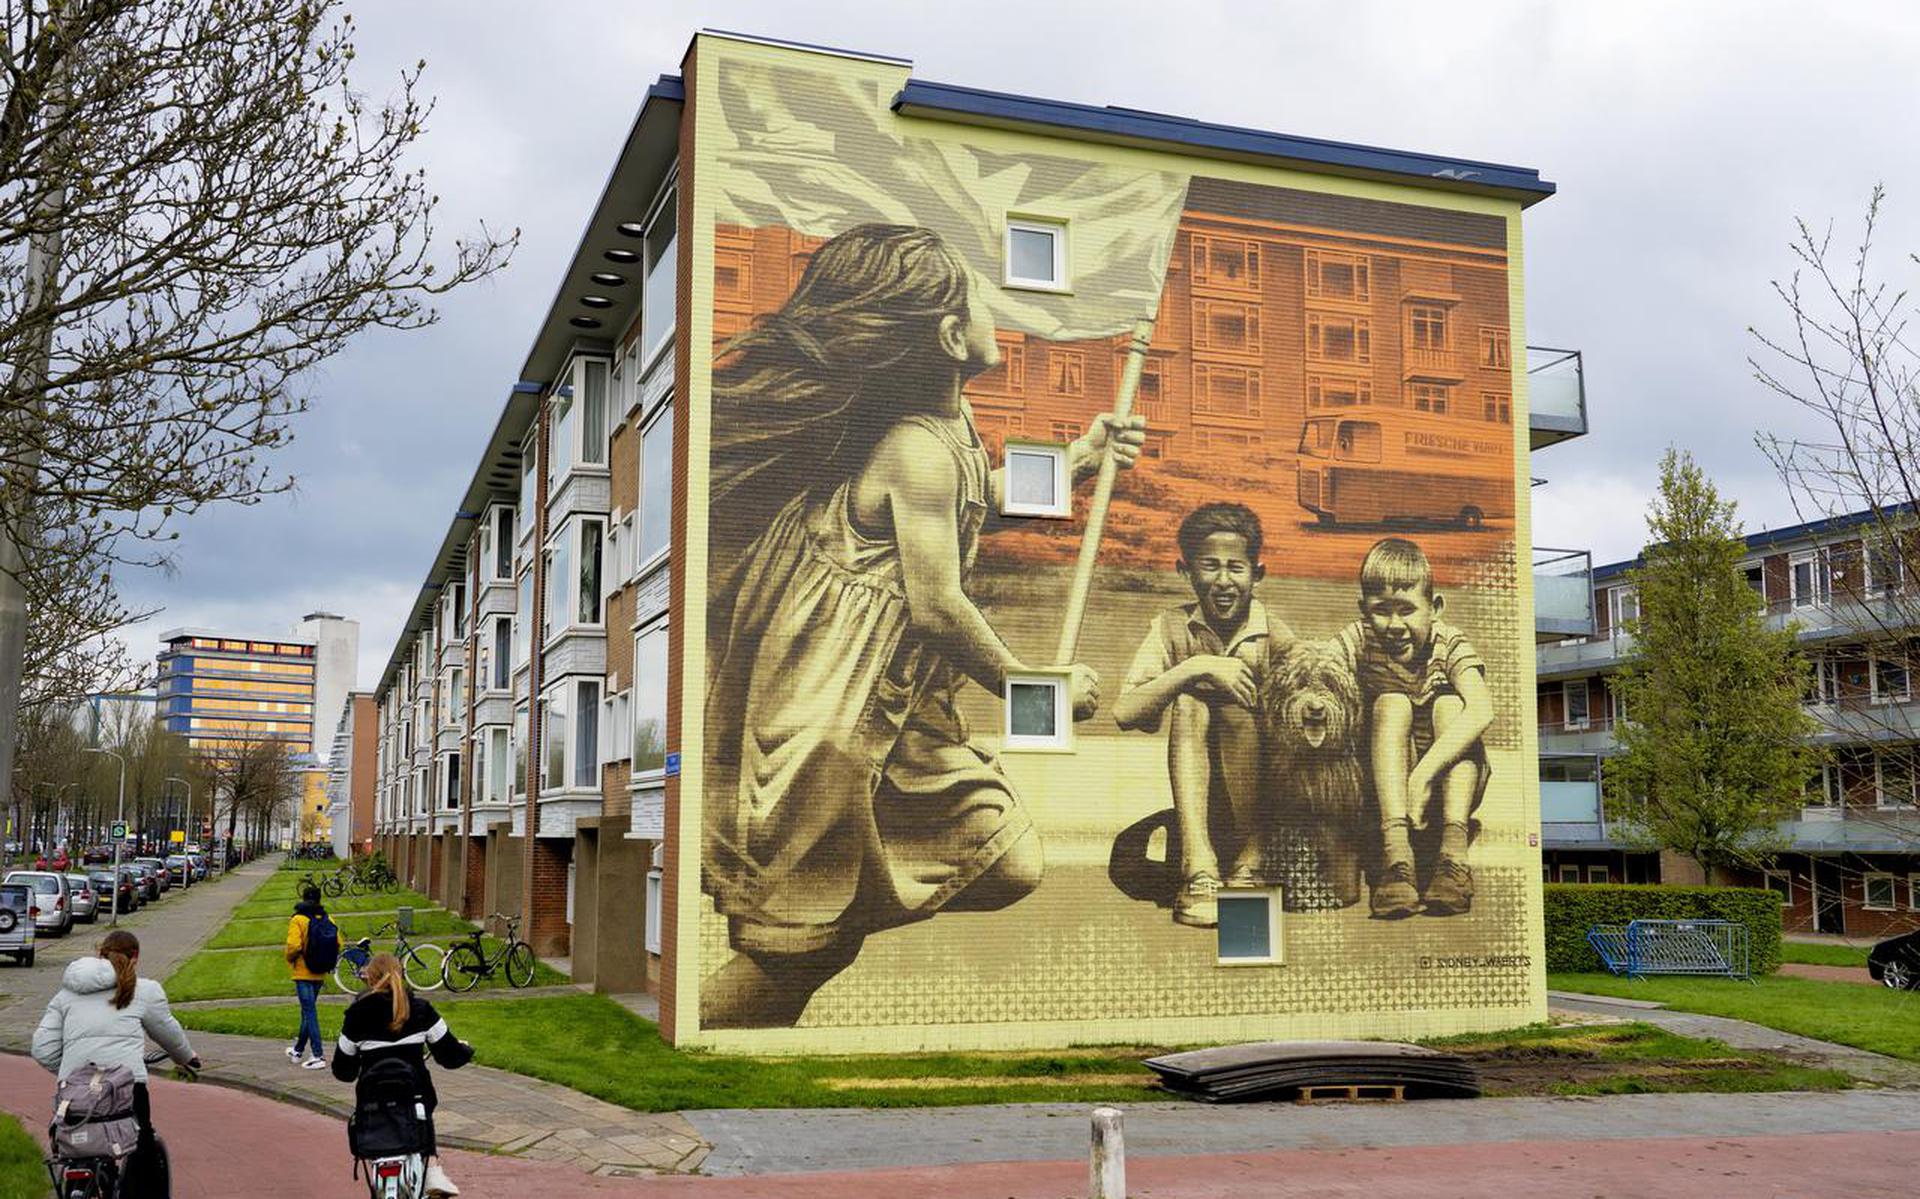 De muurschildering van Sidney Waerts aan de Pieter Stuyvesantweg maakt kans op de prijs Best Street Art wereldwijd van april.